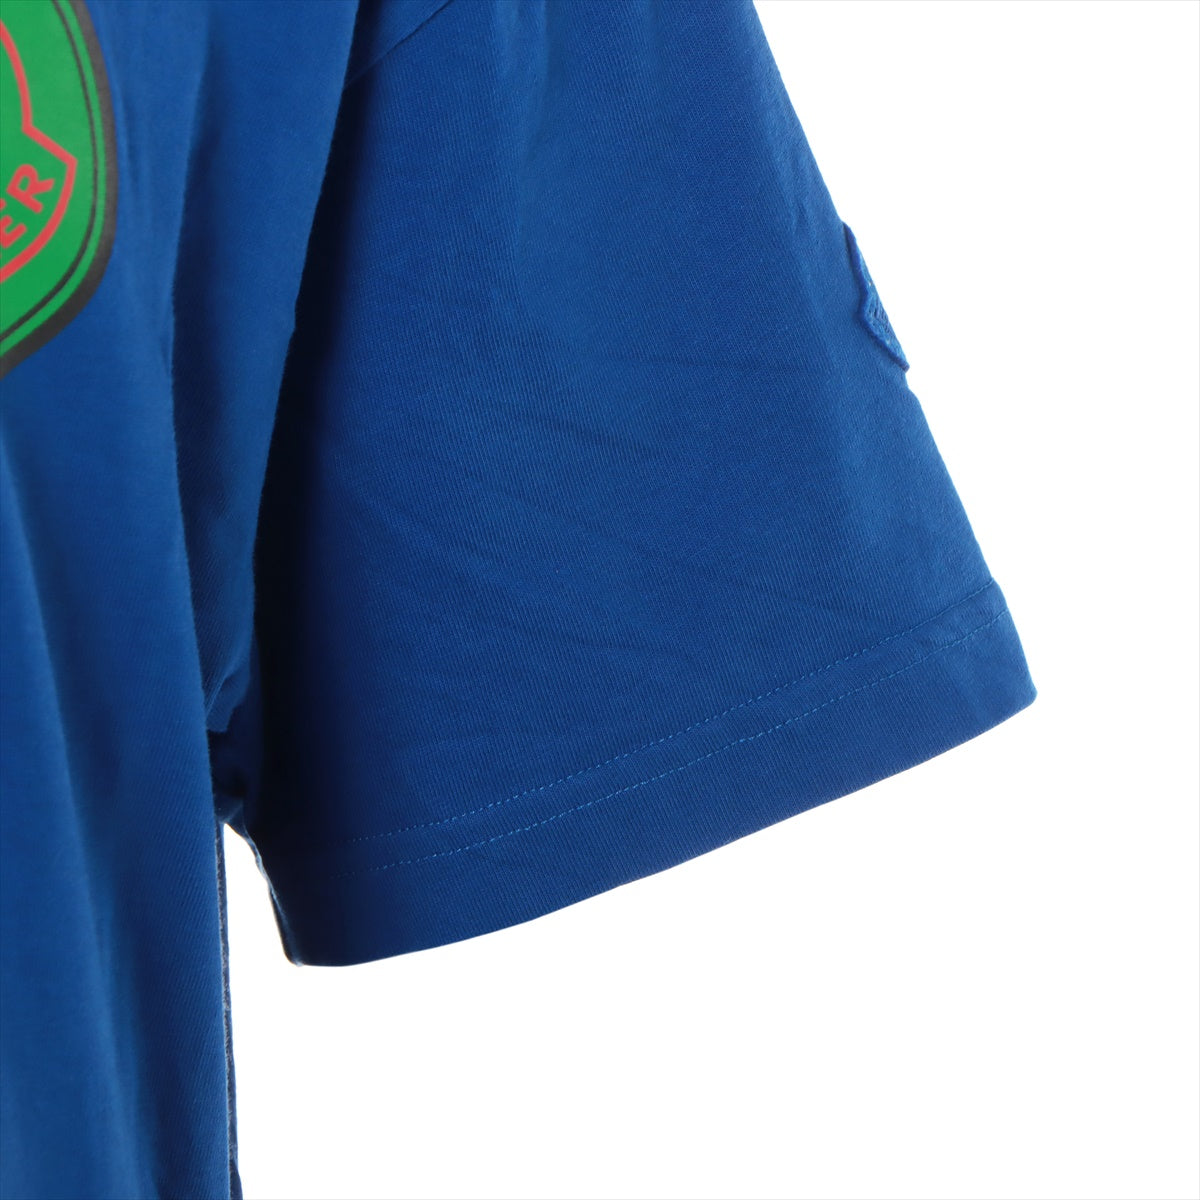 モンクレールジーニアス 1952 21年 コットン Tシャツ XS メンズ ブルー  H10928C00004